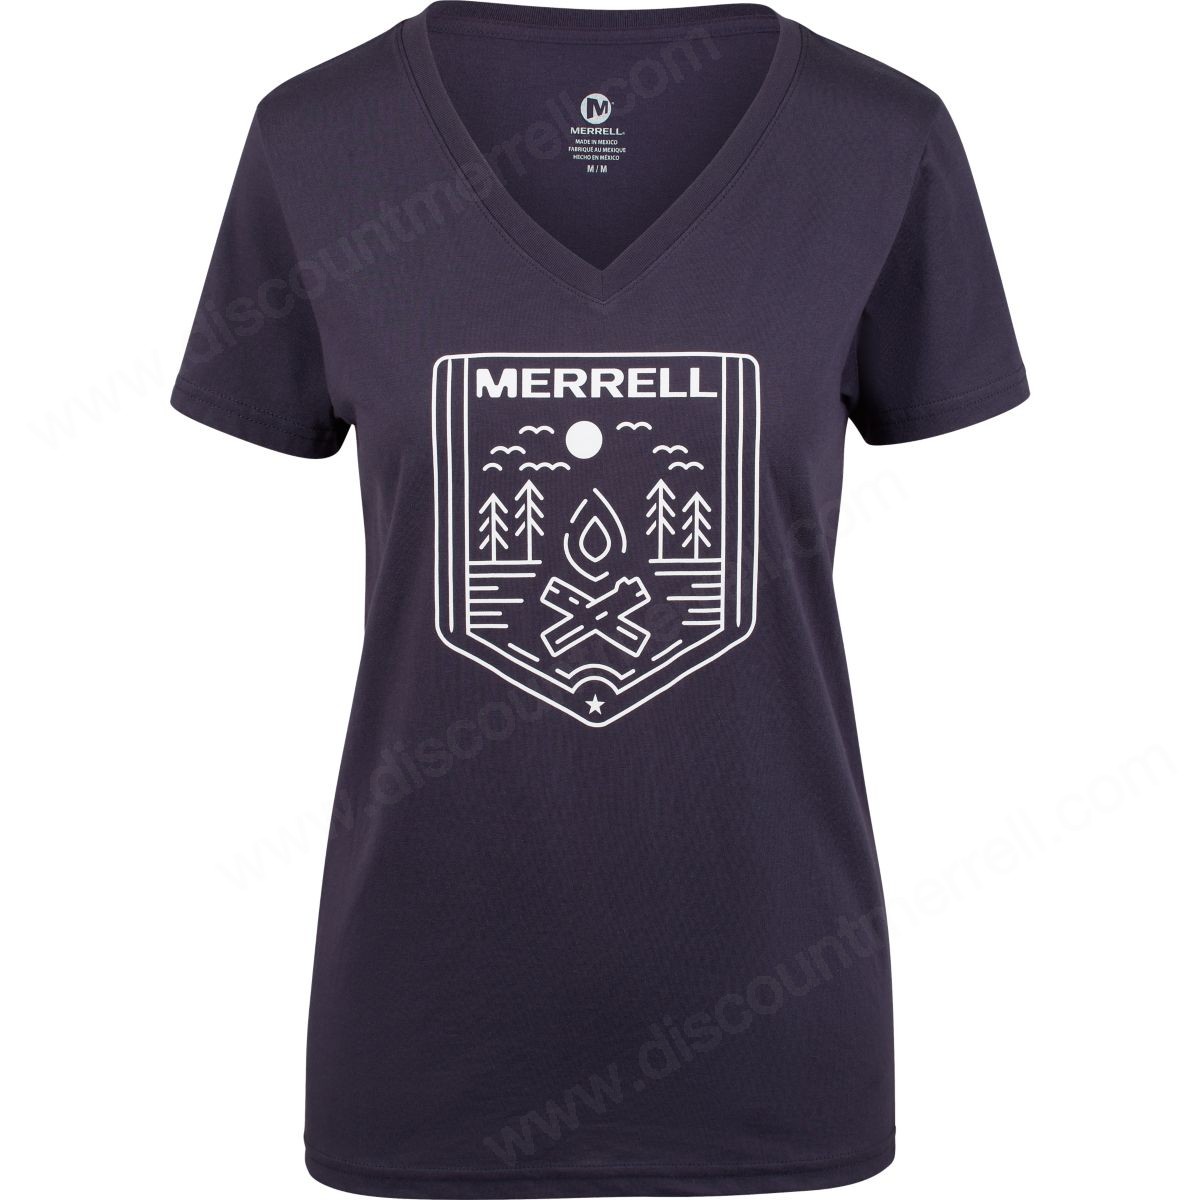 Merrell Women's Nefler Tee Navy/white - -0